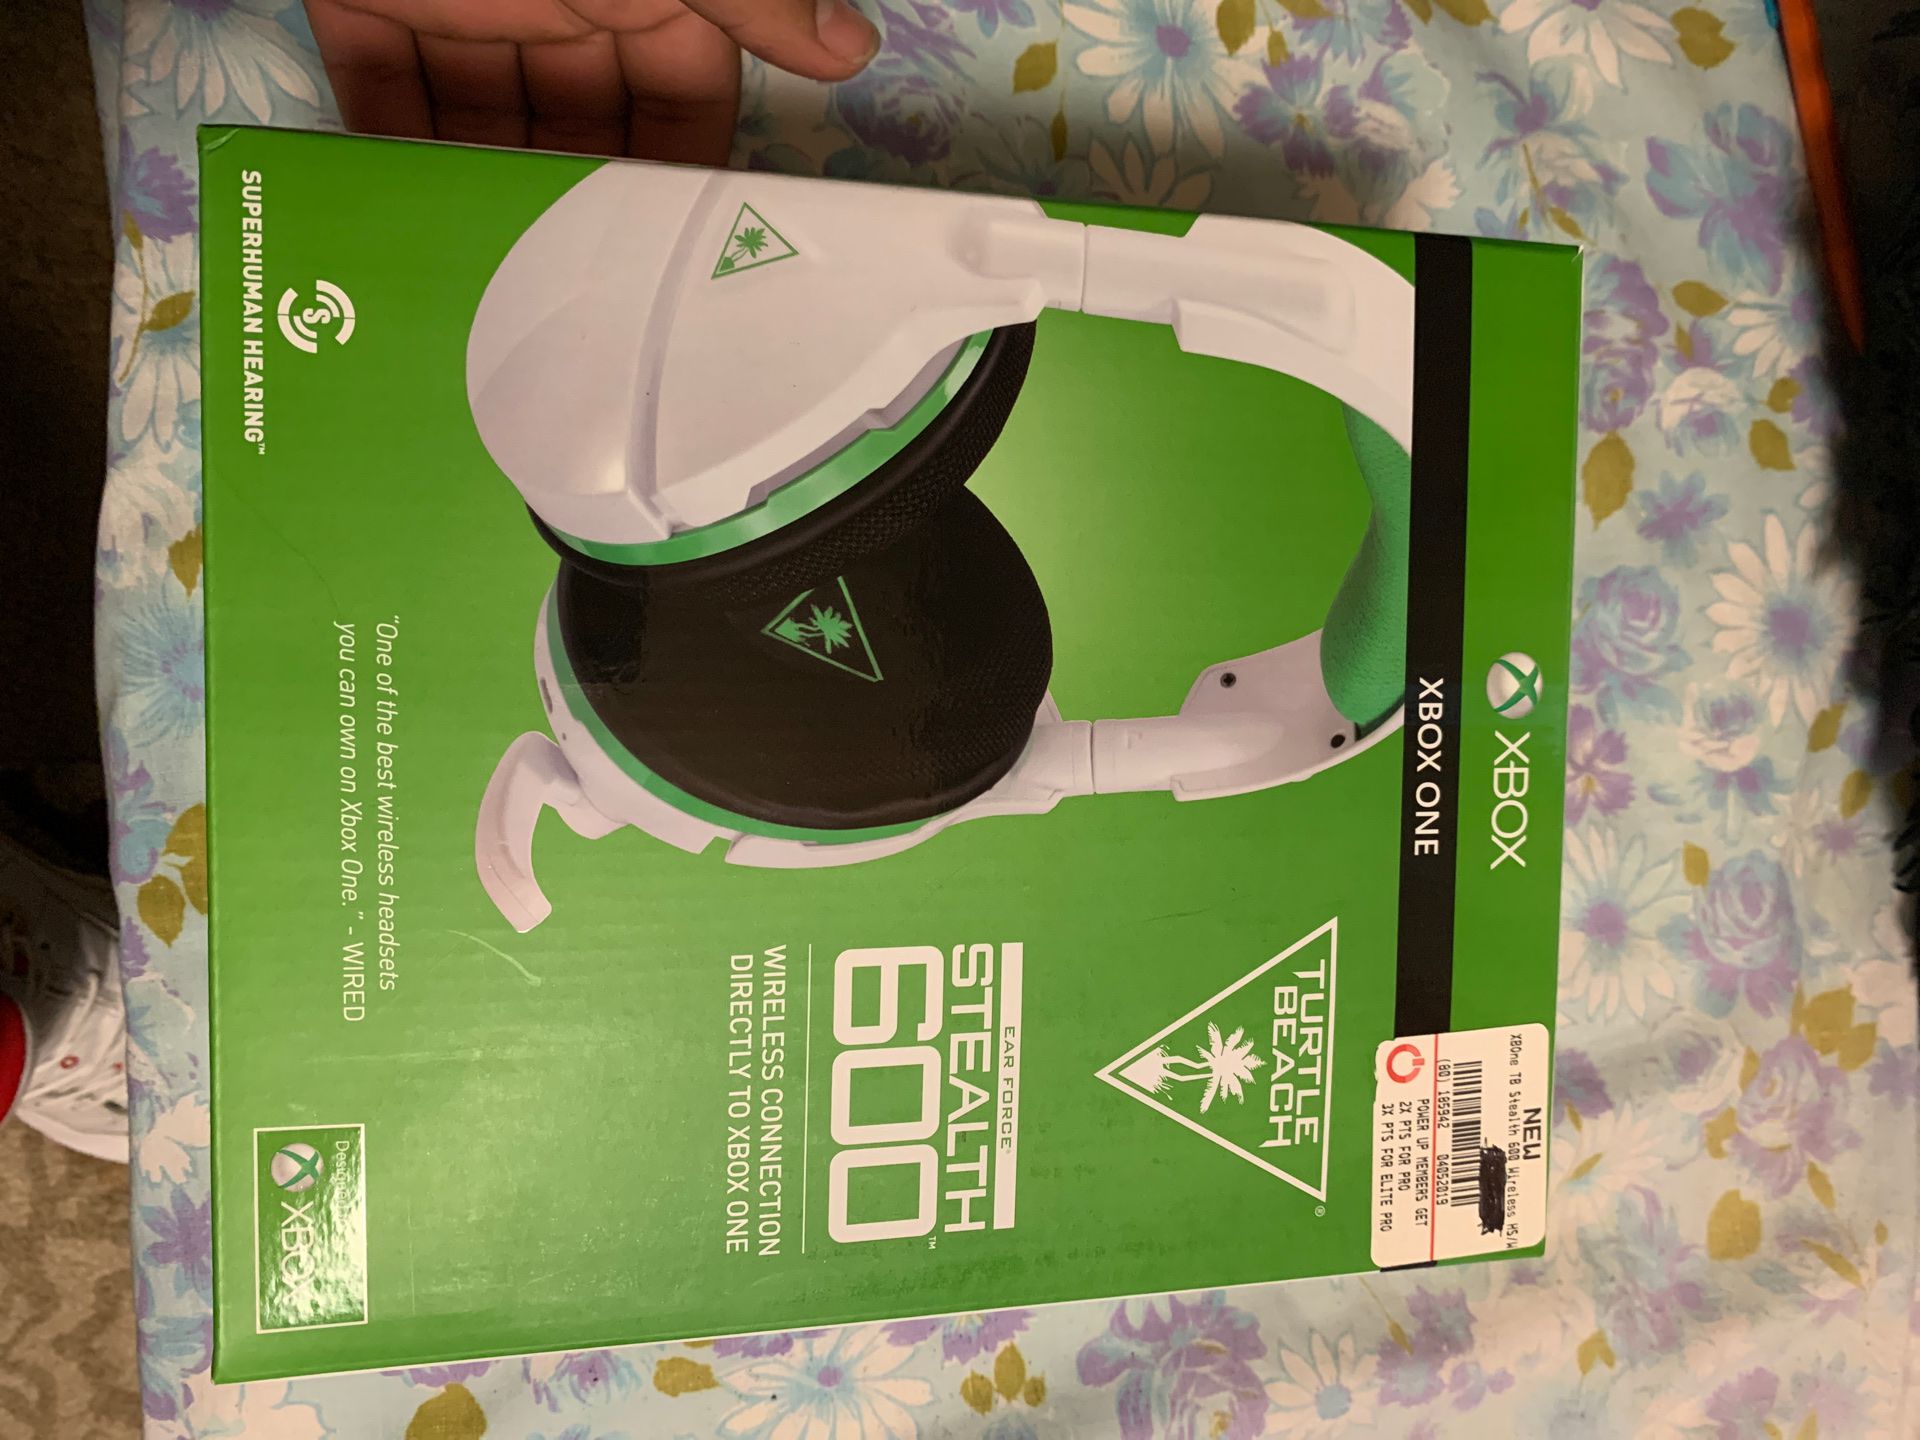 Xbox one head set Stealth 600 wireless